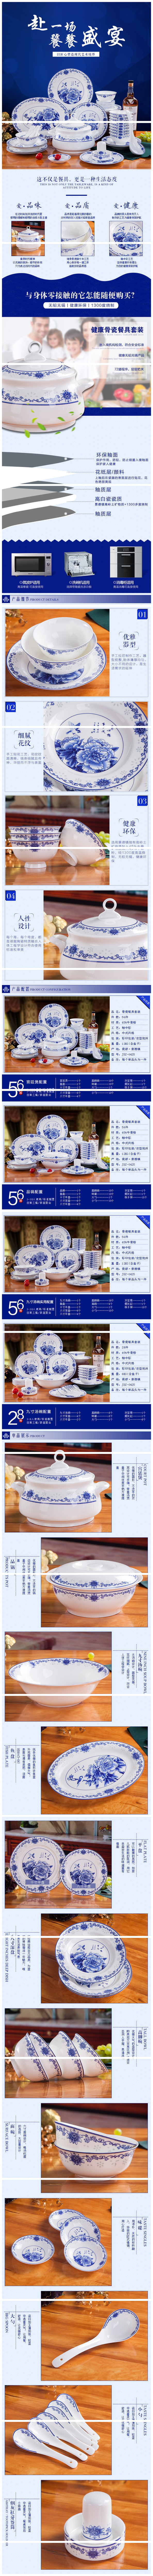 56头套装餐具 青花餐具保鲜碗 年终礼品景瓷餐具